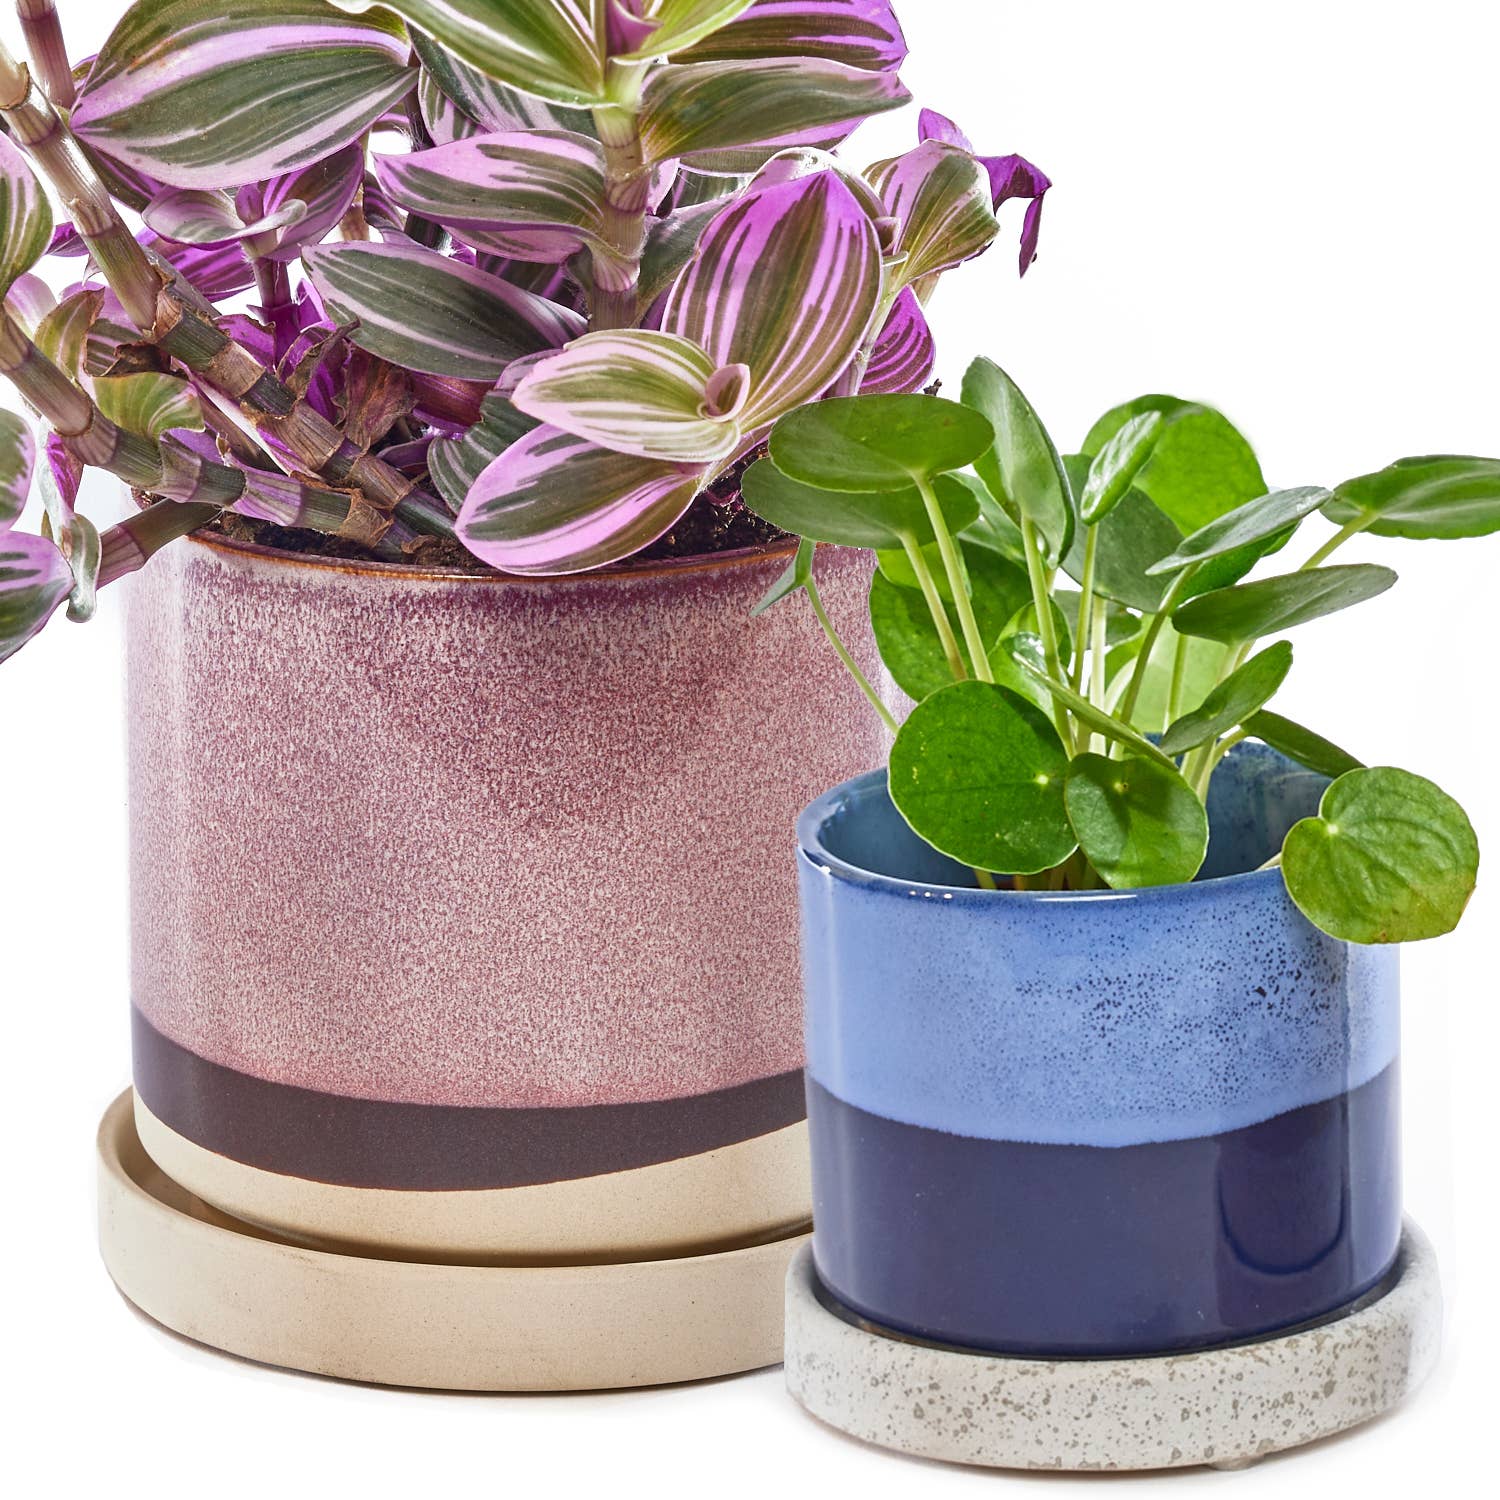 Chive - Minute Ceramic Plant Pots Indoor: Cosmos / 5"